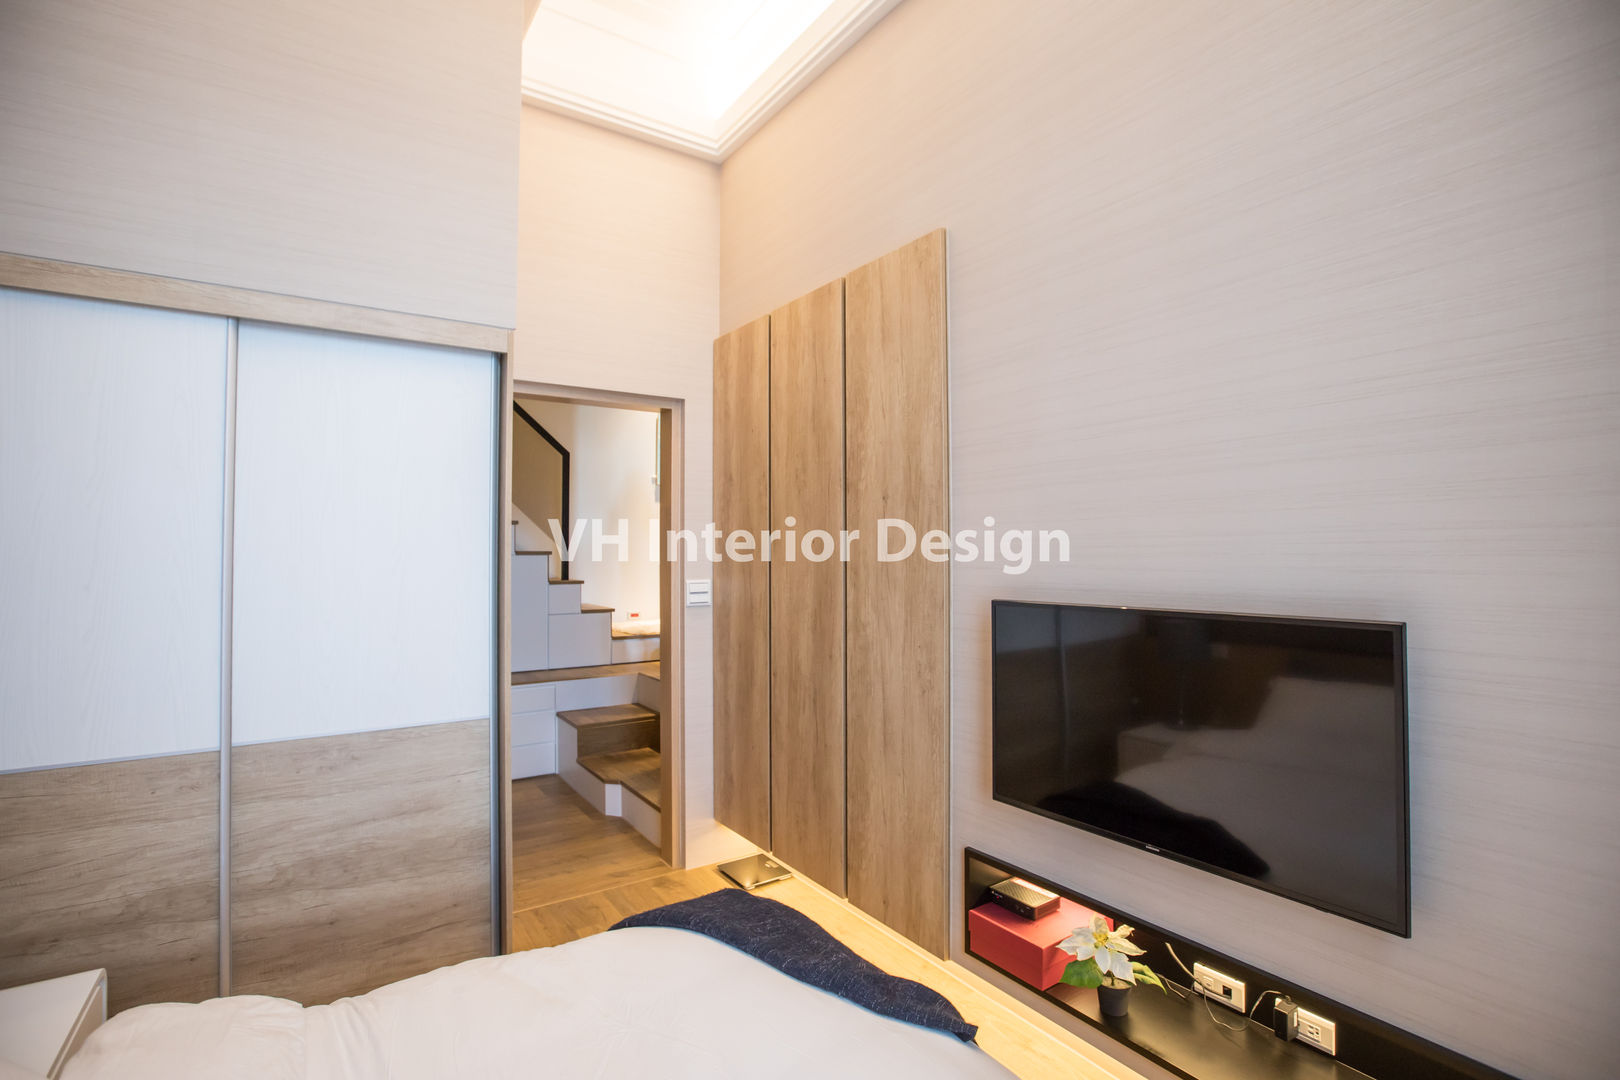 士林黃公館, VH INTERIOR DESIGN VH INTERIOR DESIGN Dormitorios modernos